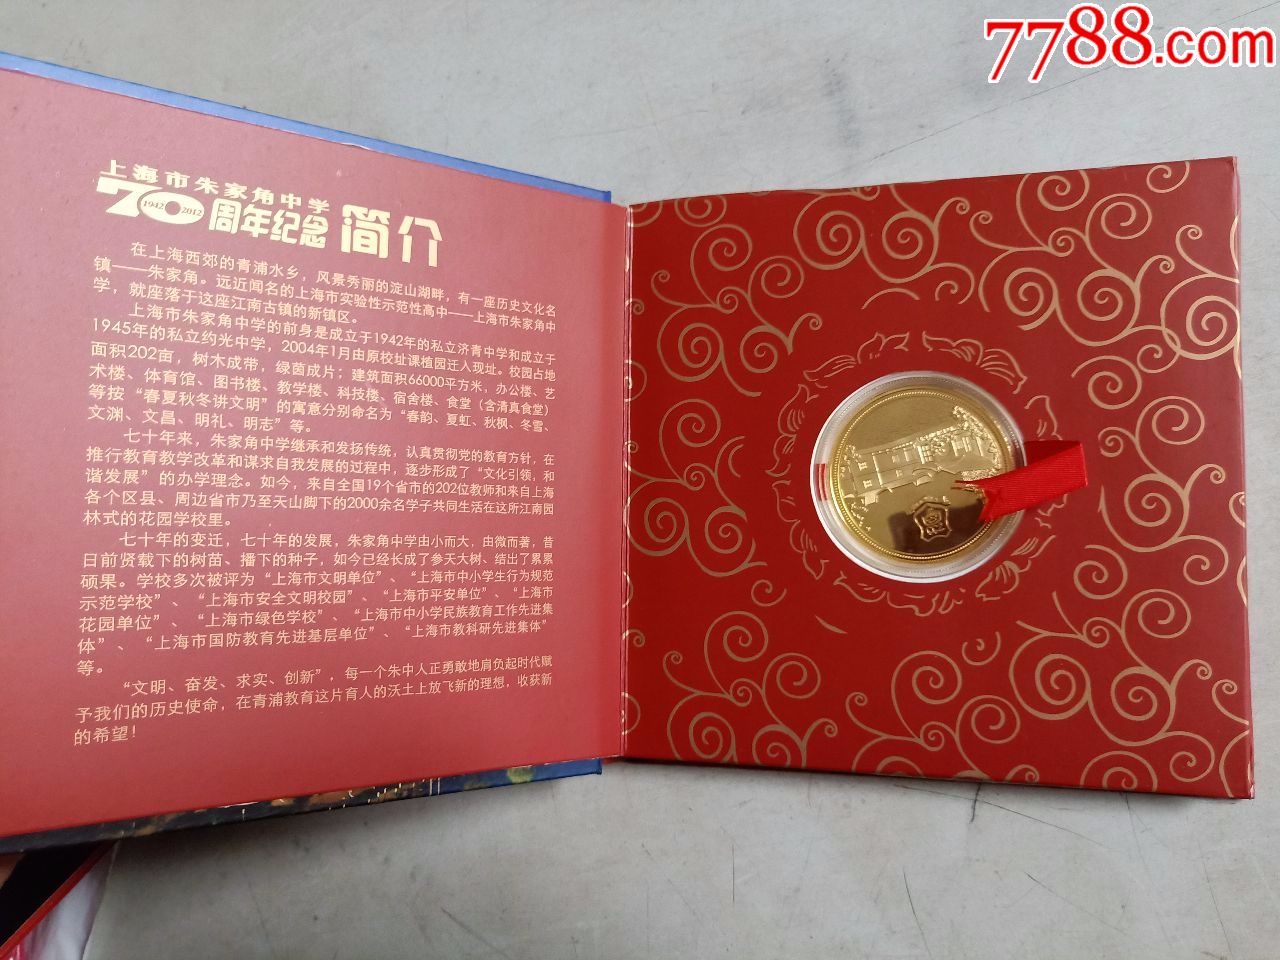 上海市朱家角中学70周年(纪念章)